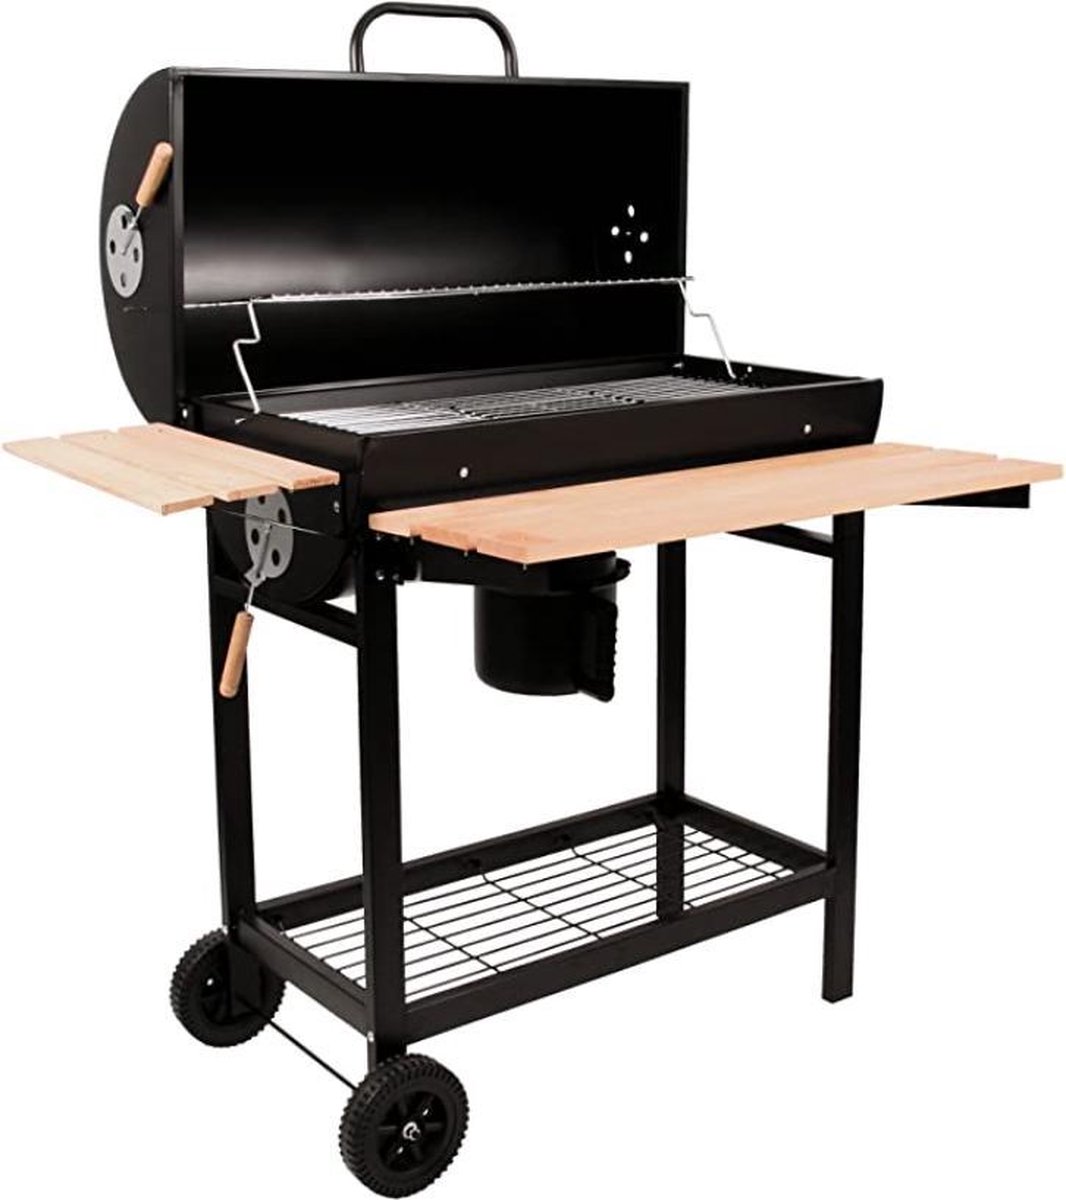 BBQ-Toro Houtskool grillwagen | Premium houtskoolbarbecue trolley, rookoven, barbecue grill met deksel, warmhoudrooster, inklapbaar plateau en nog veel meer